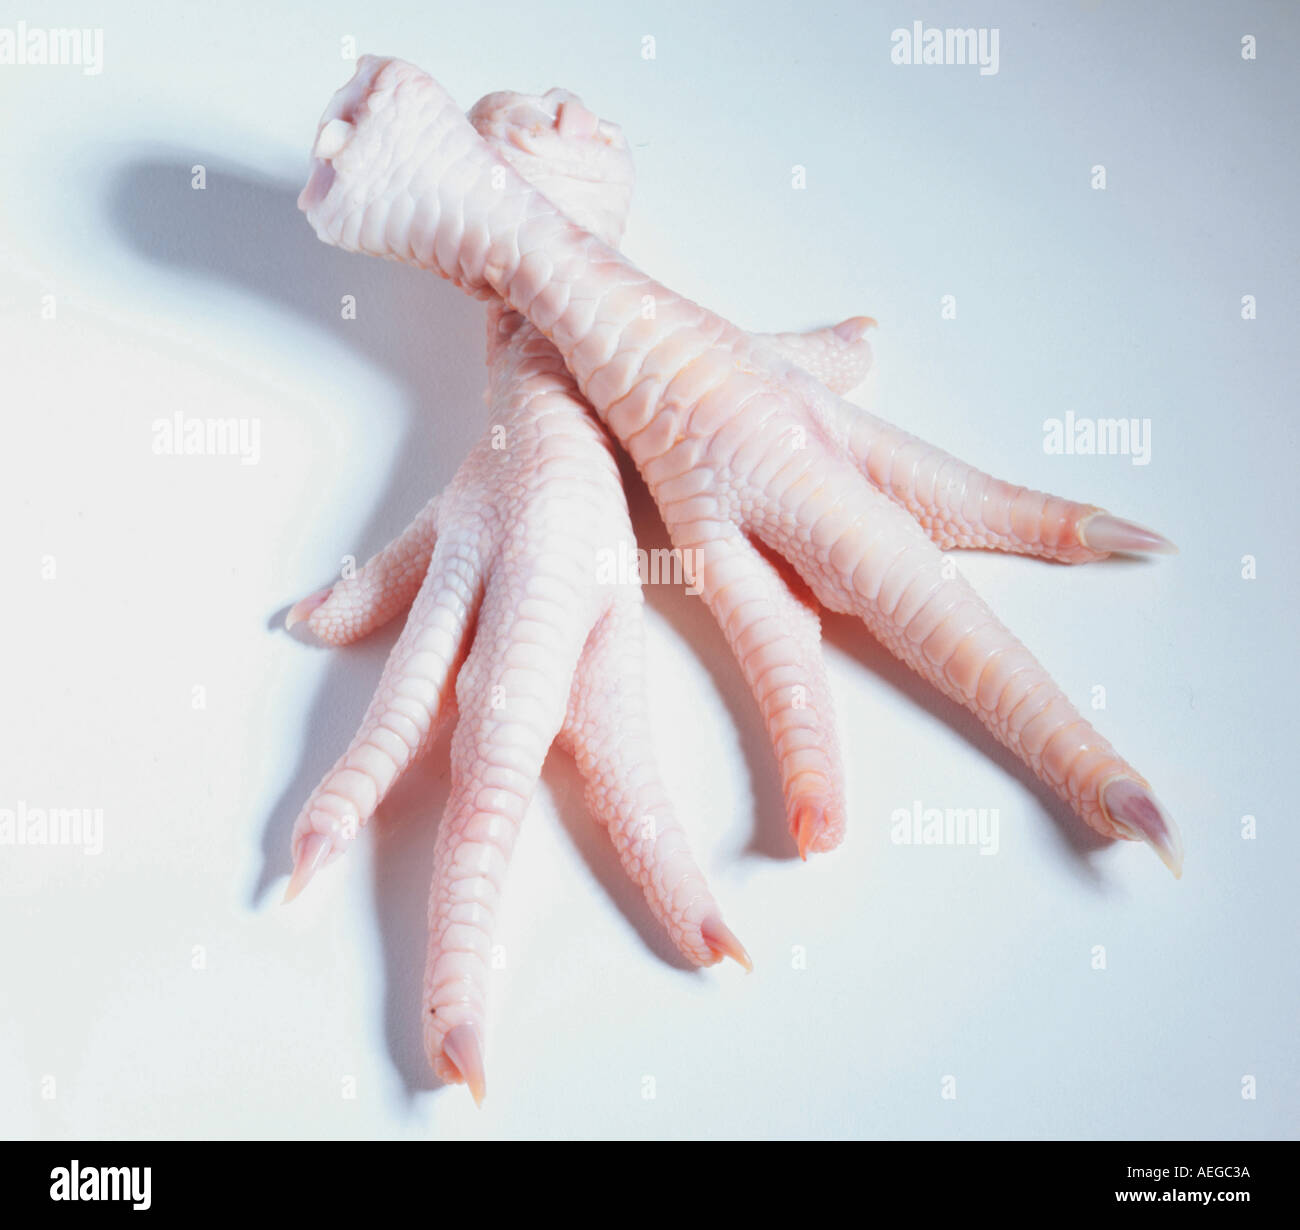 Cibo piedi piedi dita artiglio artigli taloni talons " Anatomia lordo di pollo pollo s chiodo stufato zampe paw stropicciata pallido carne alimentare Foto Stock